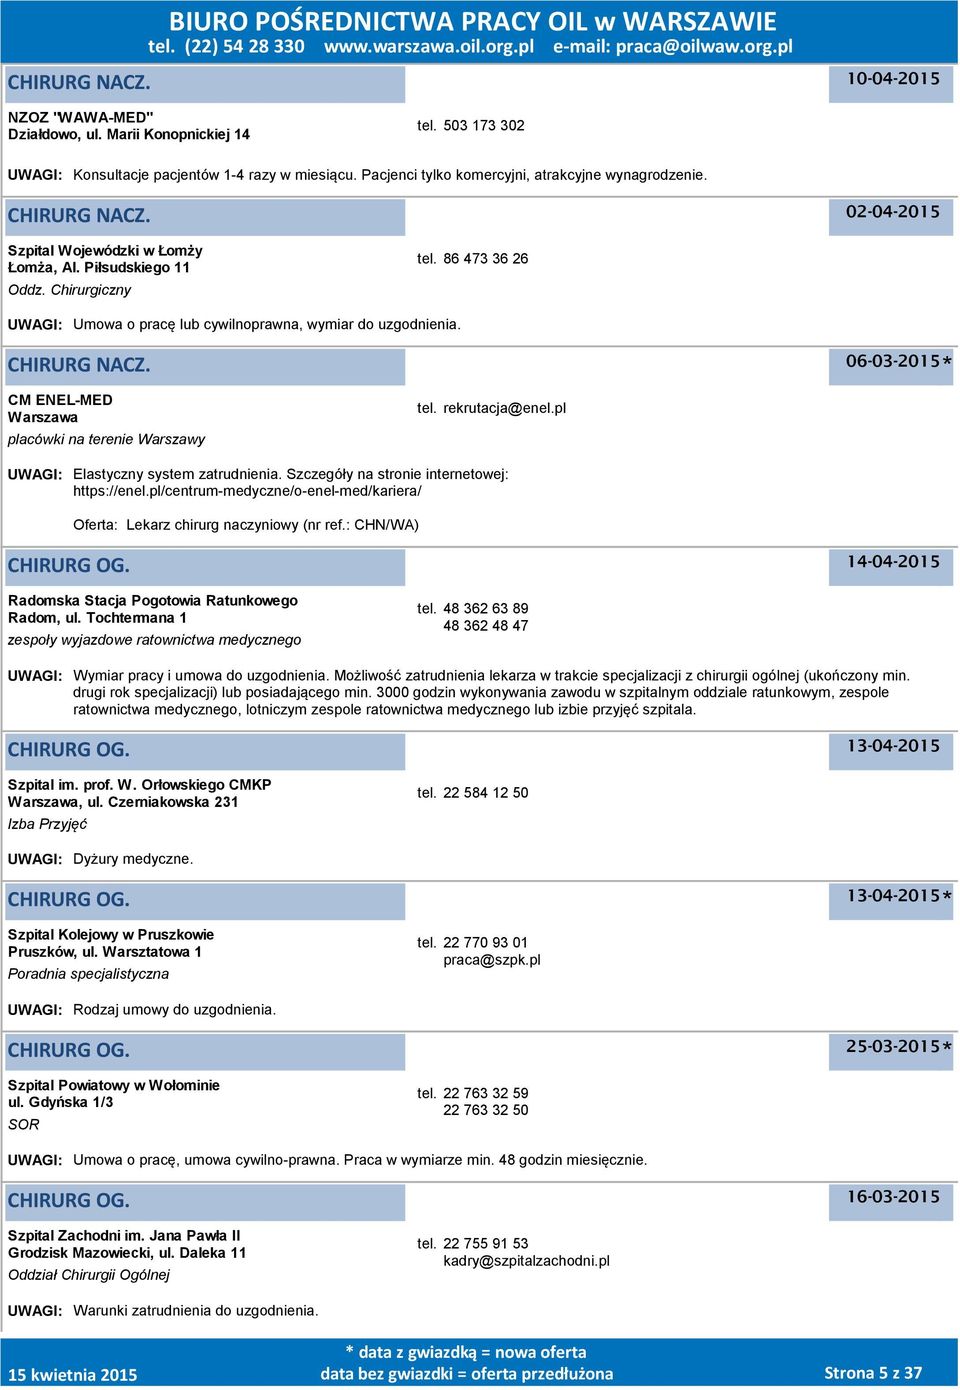 06-03-2015 CM ENEL-MED placówki na terenie Warszawy tel. rekrutacja@enel.pl UWAGI: Elastyczny system zatrudnienia. Szczegóły na stronie internetowej: https://enel.